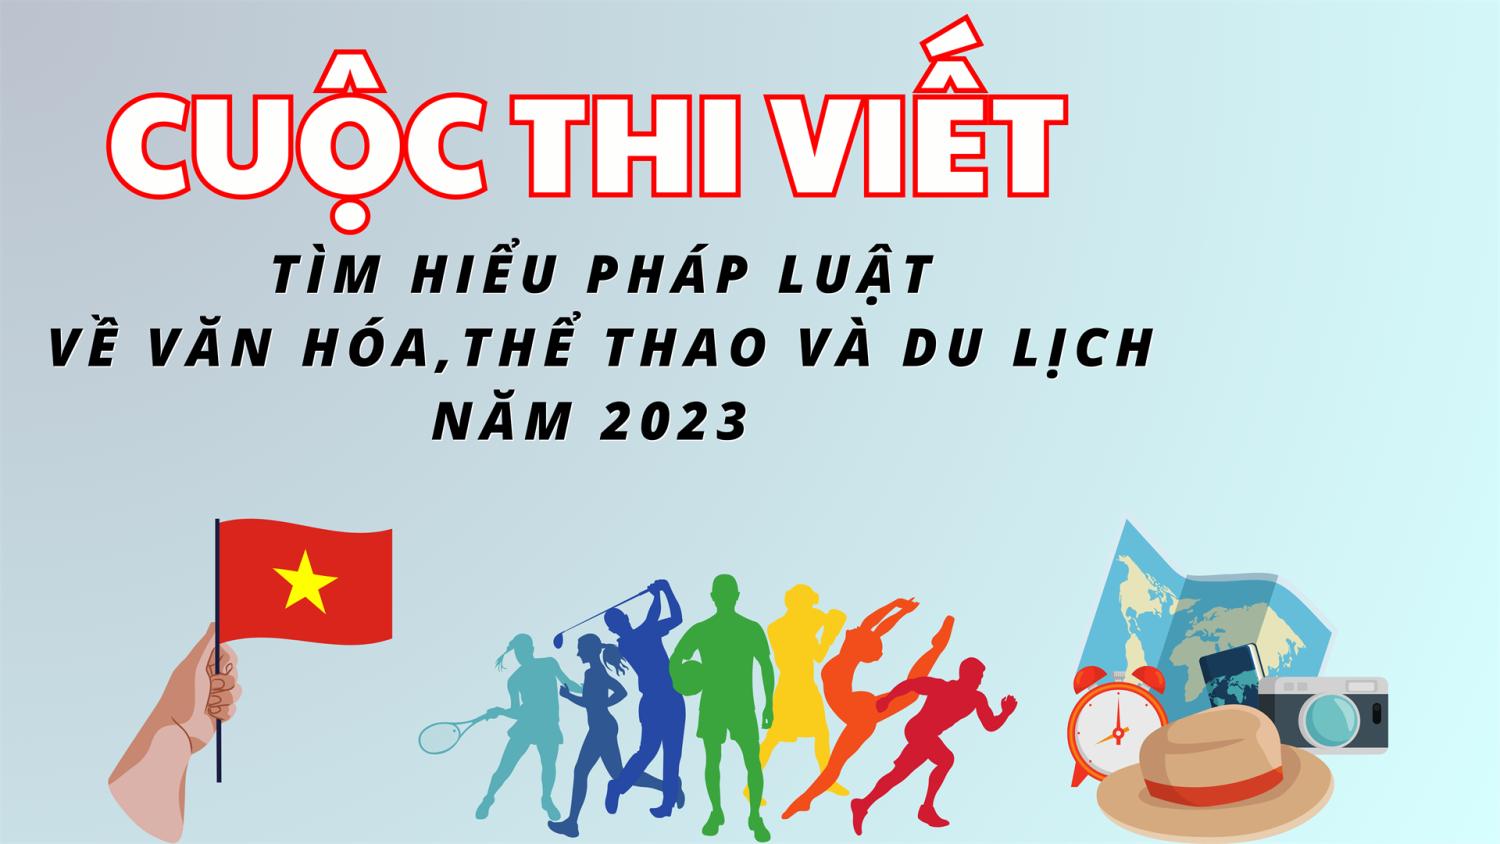 Cuộc thi viết  “Tìm hiểu pháp luật về Văn hóa, Thể thao và Du lịch” năm 2023